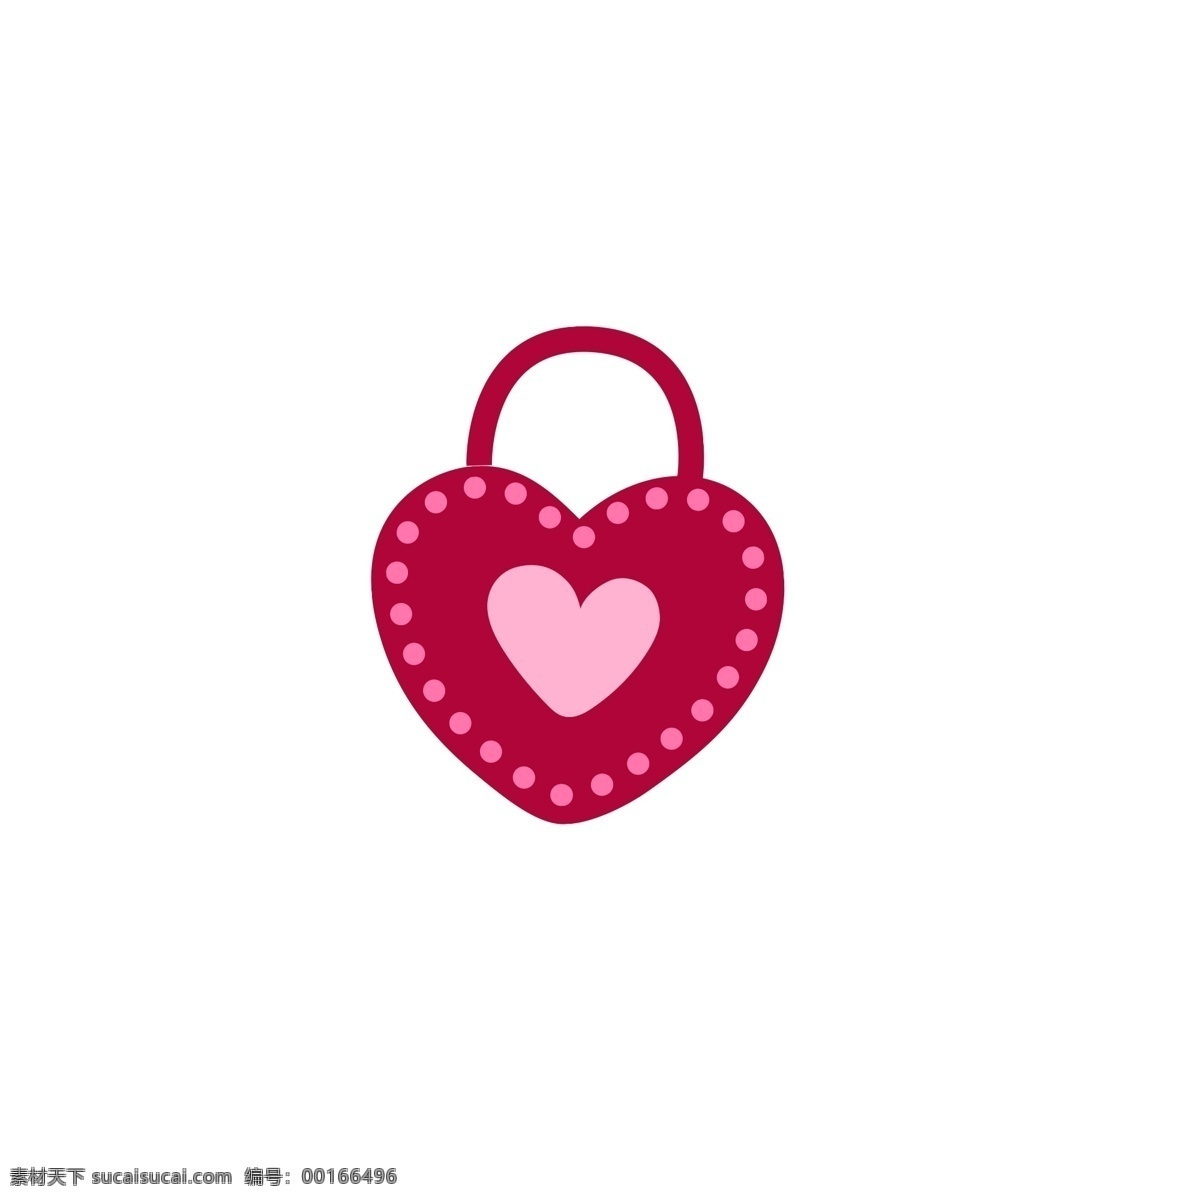 爱情 锁 情人节 爱心 红色 gif 爱情锁 爱心锁 图标元素